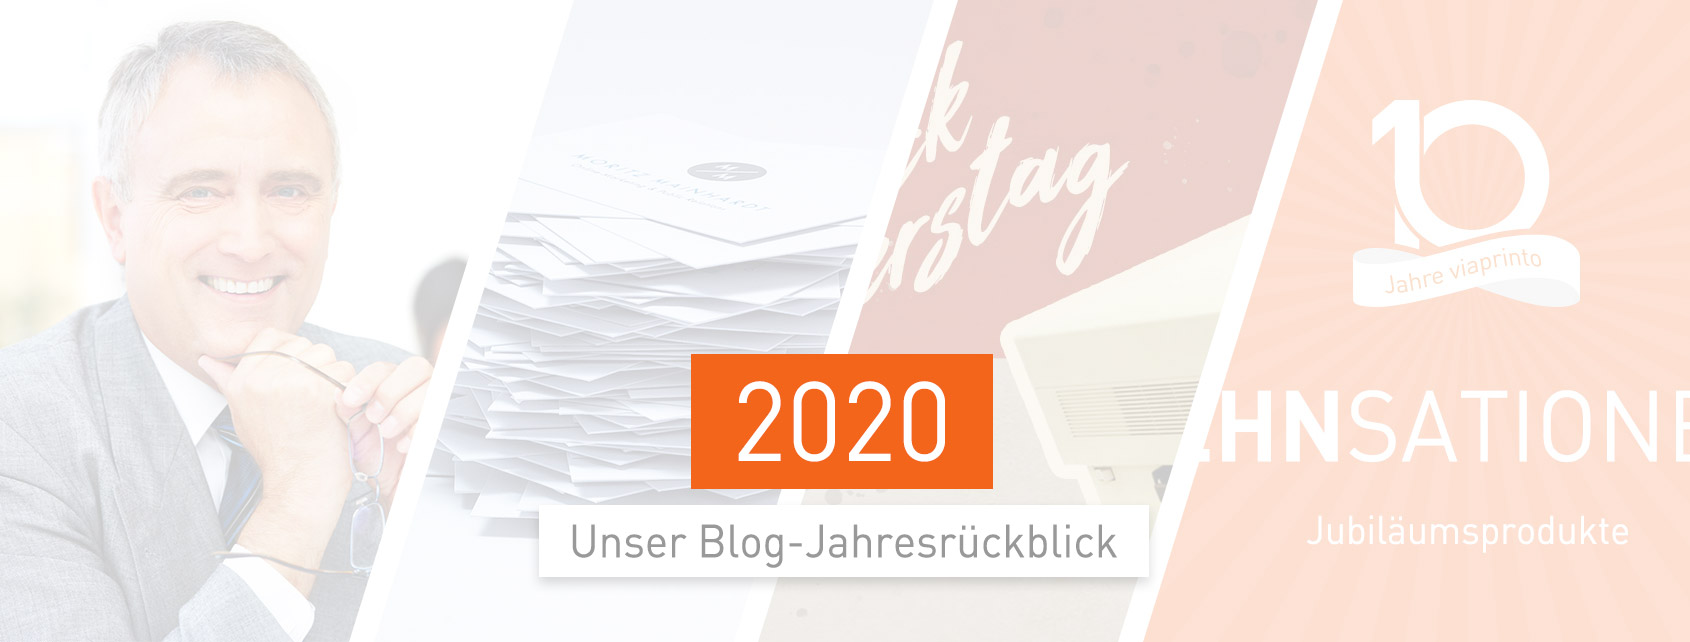 blogheader-rueckblick-2020-1690x642px-@2x